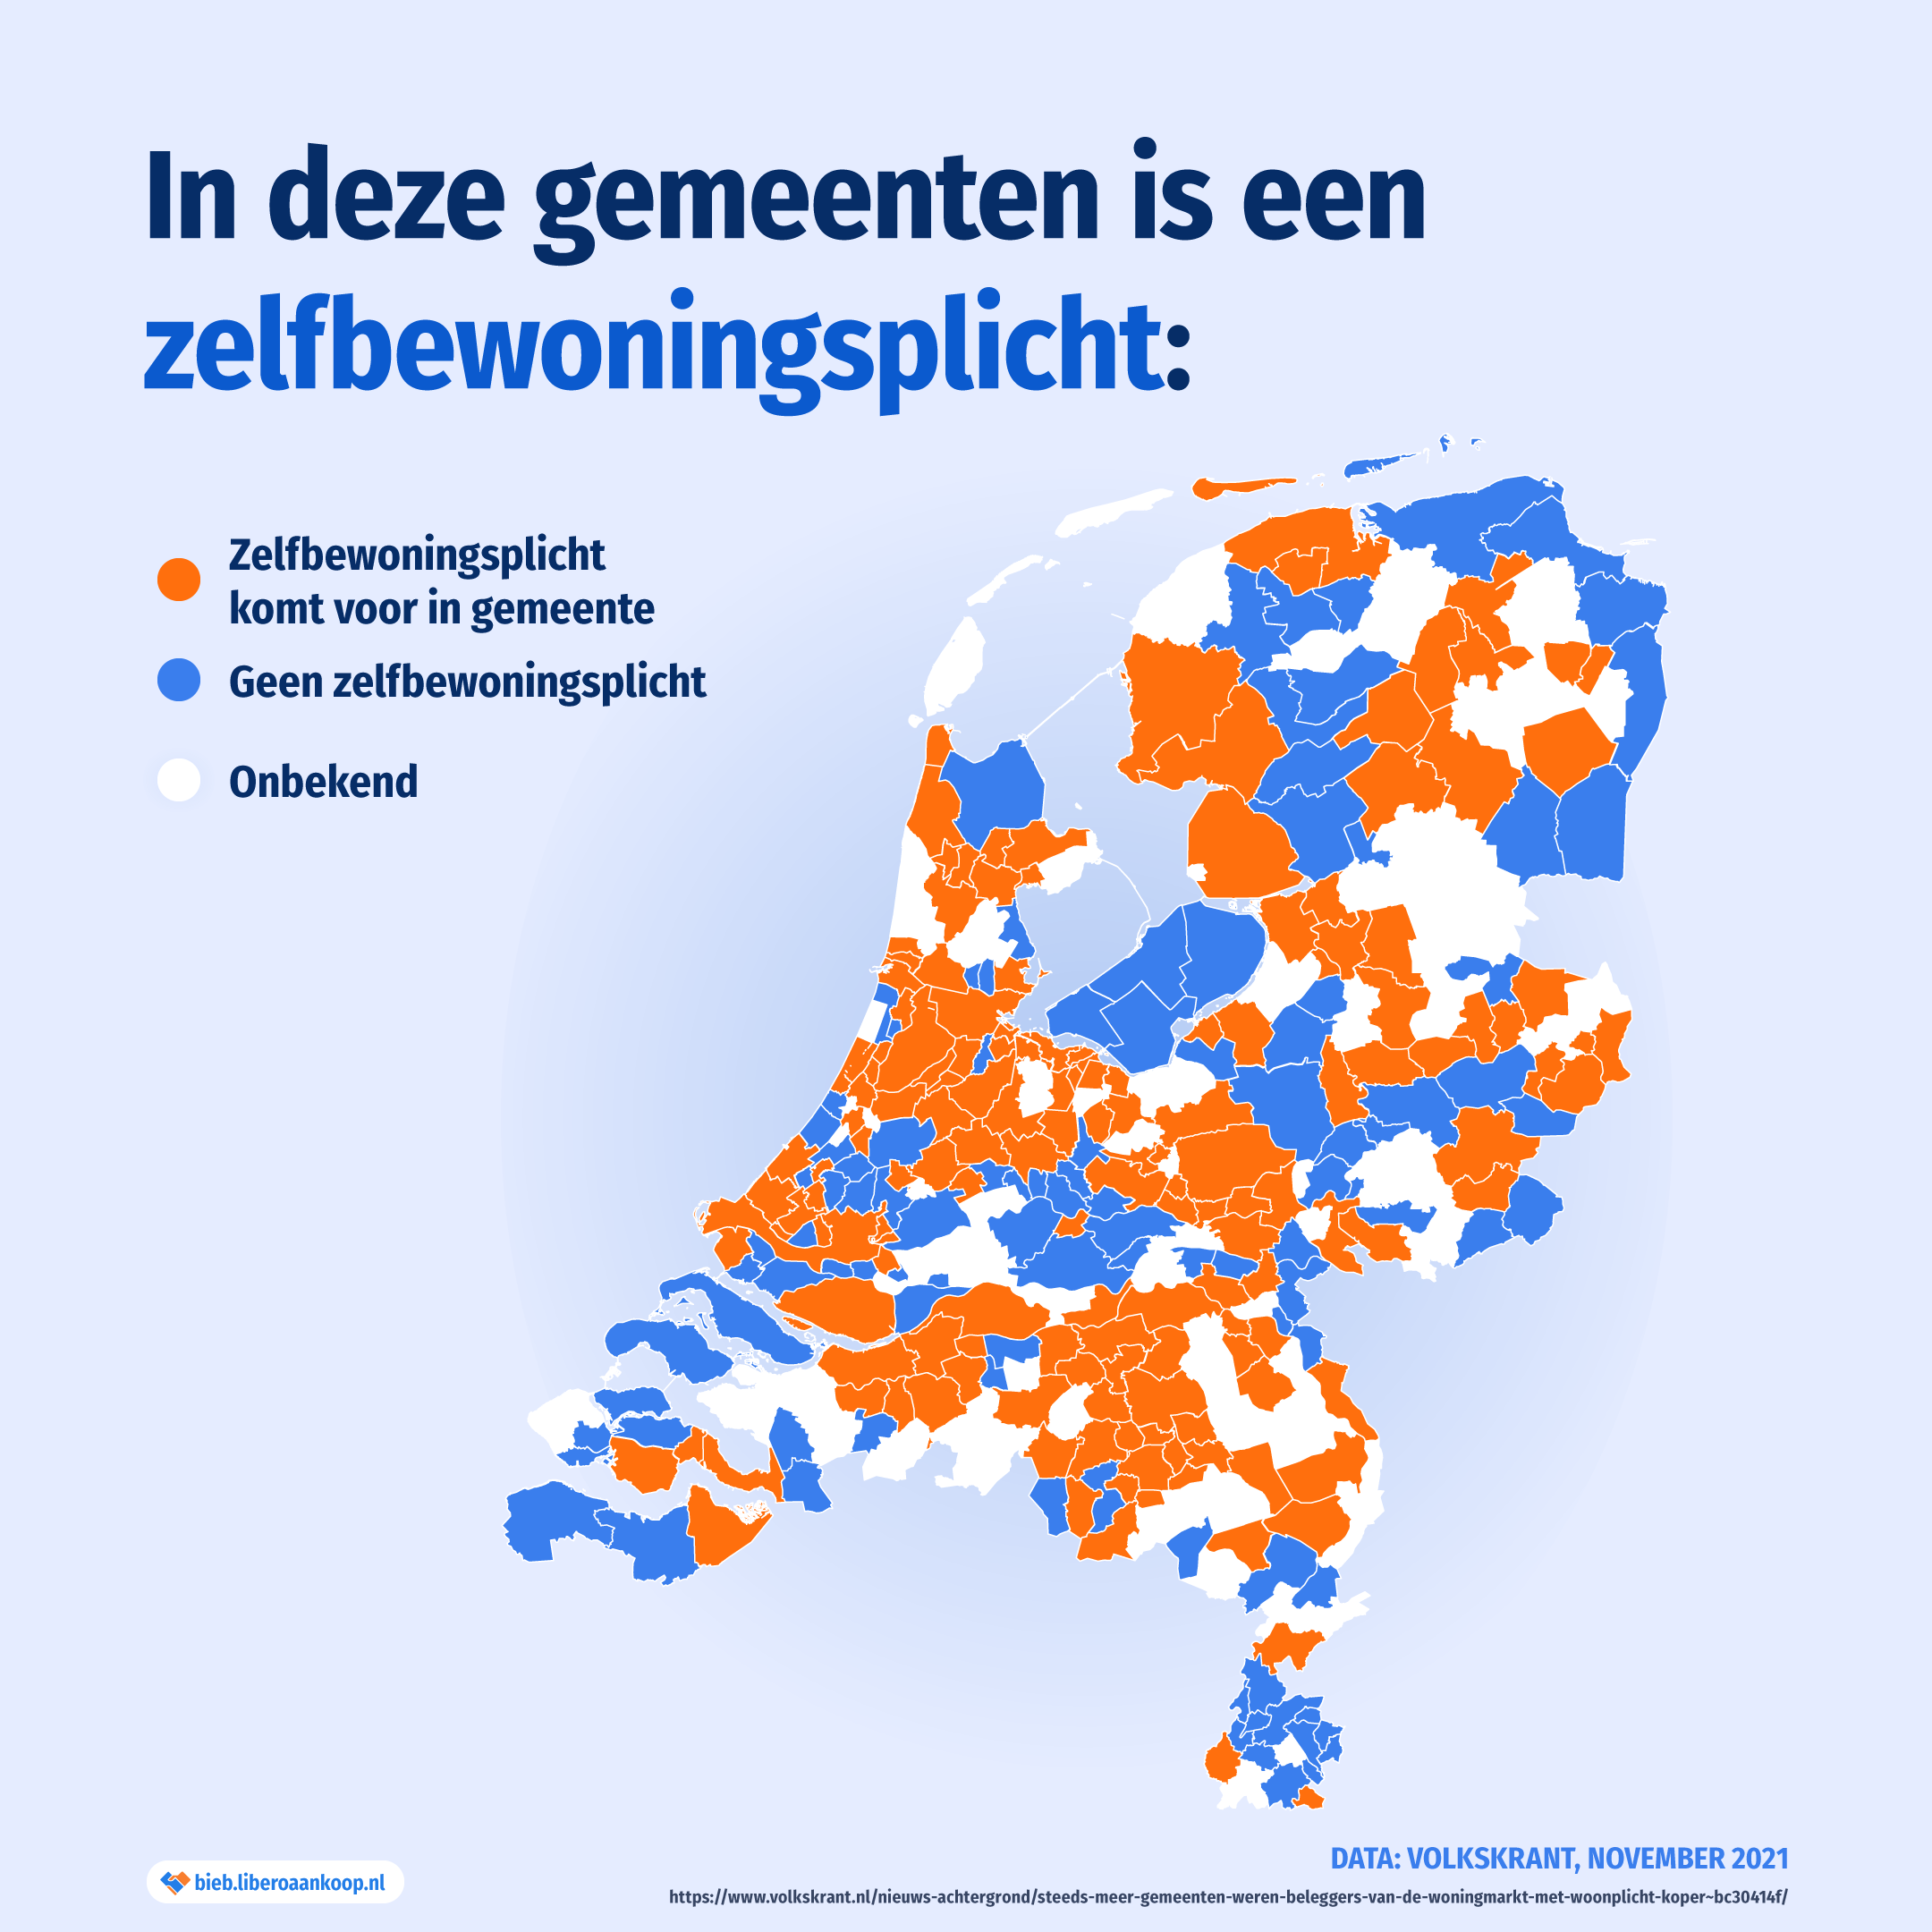 In deze gemeenten is een zelfbewoningsplicht - kaart van Nederland met overzicht